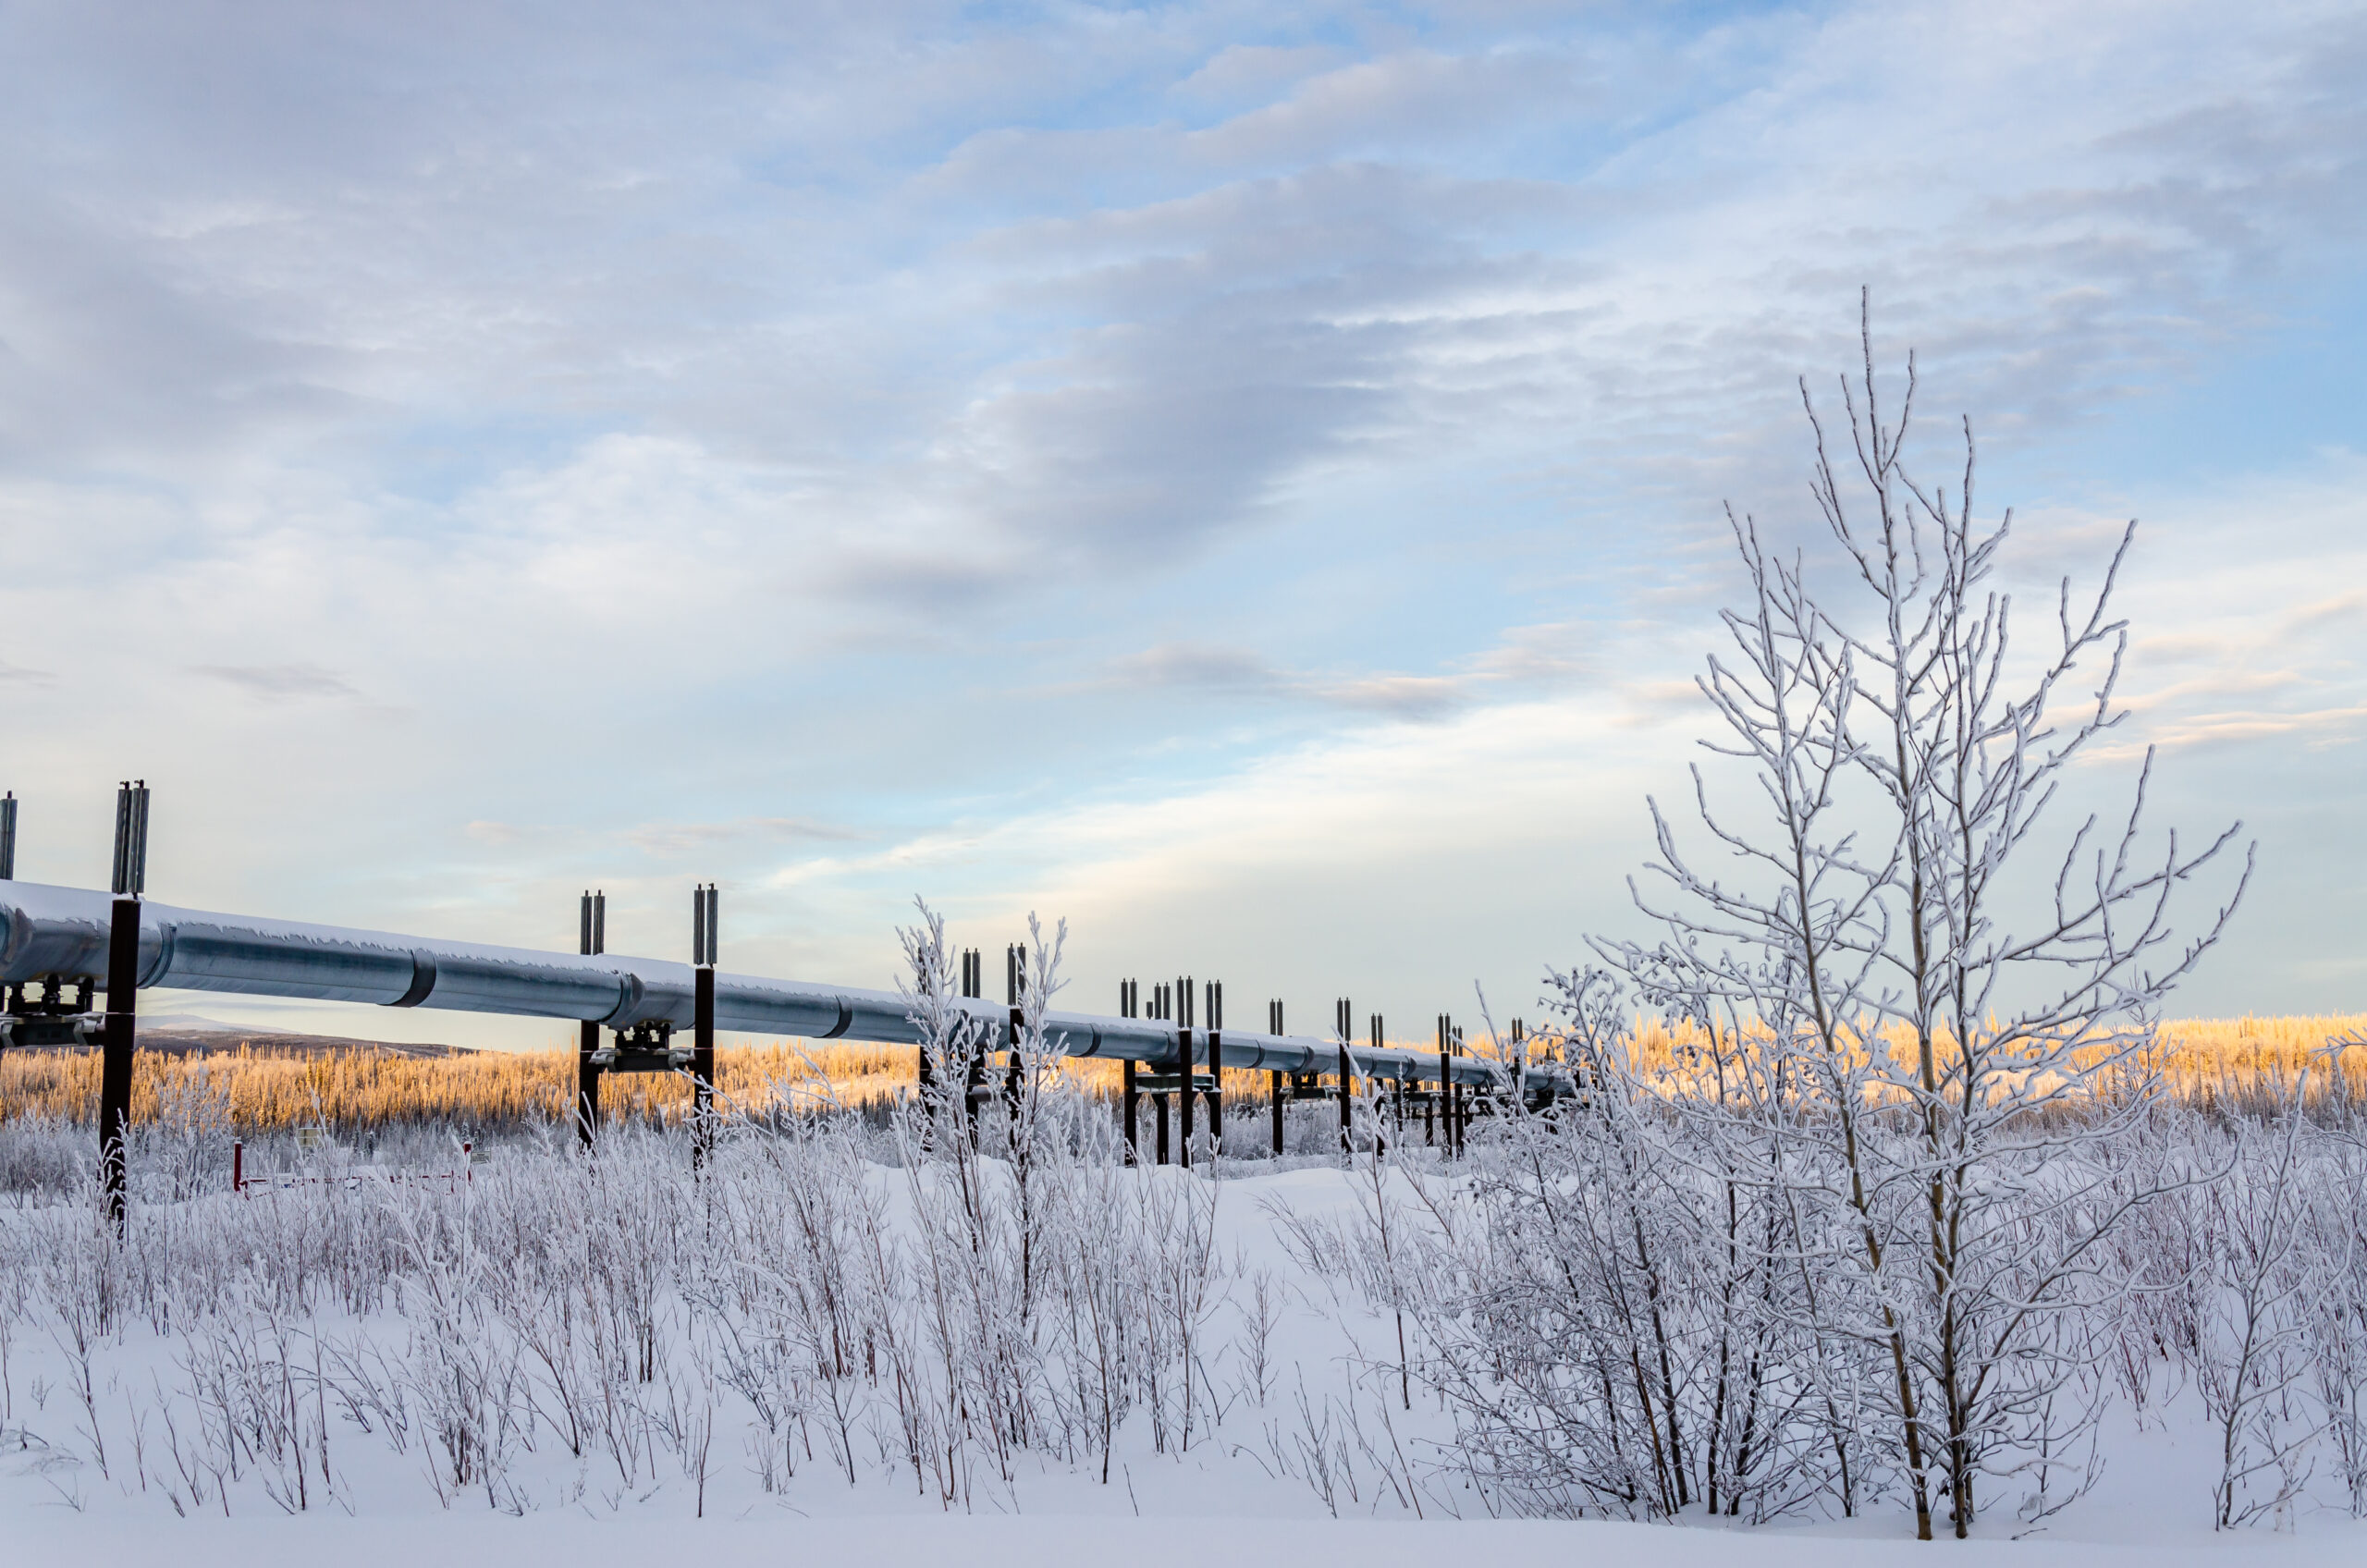 Trans Alaska Pipeline along Dalton Highway